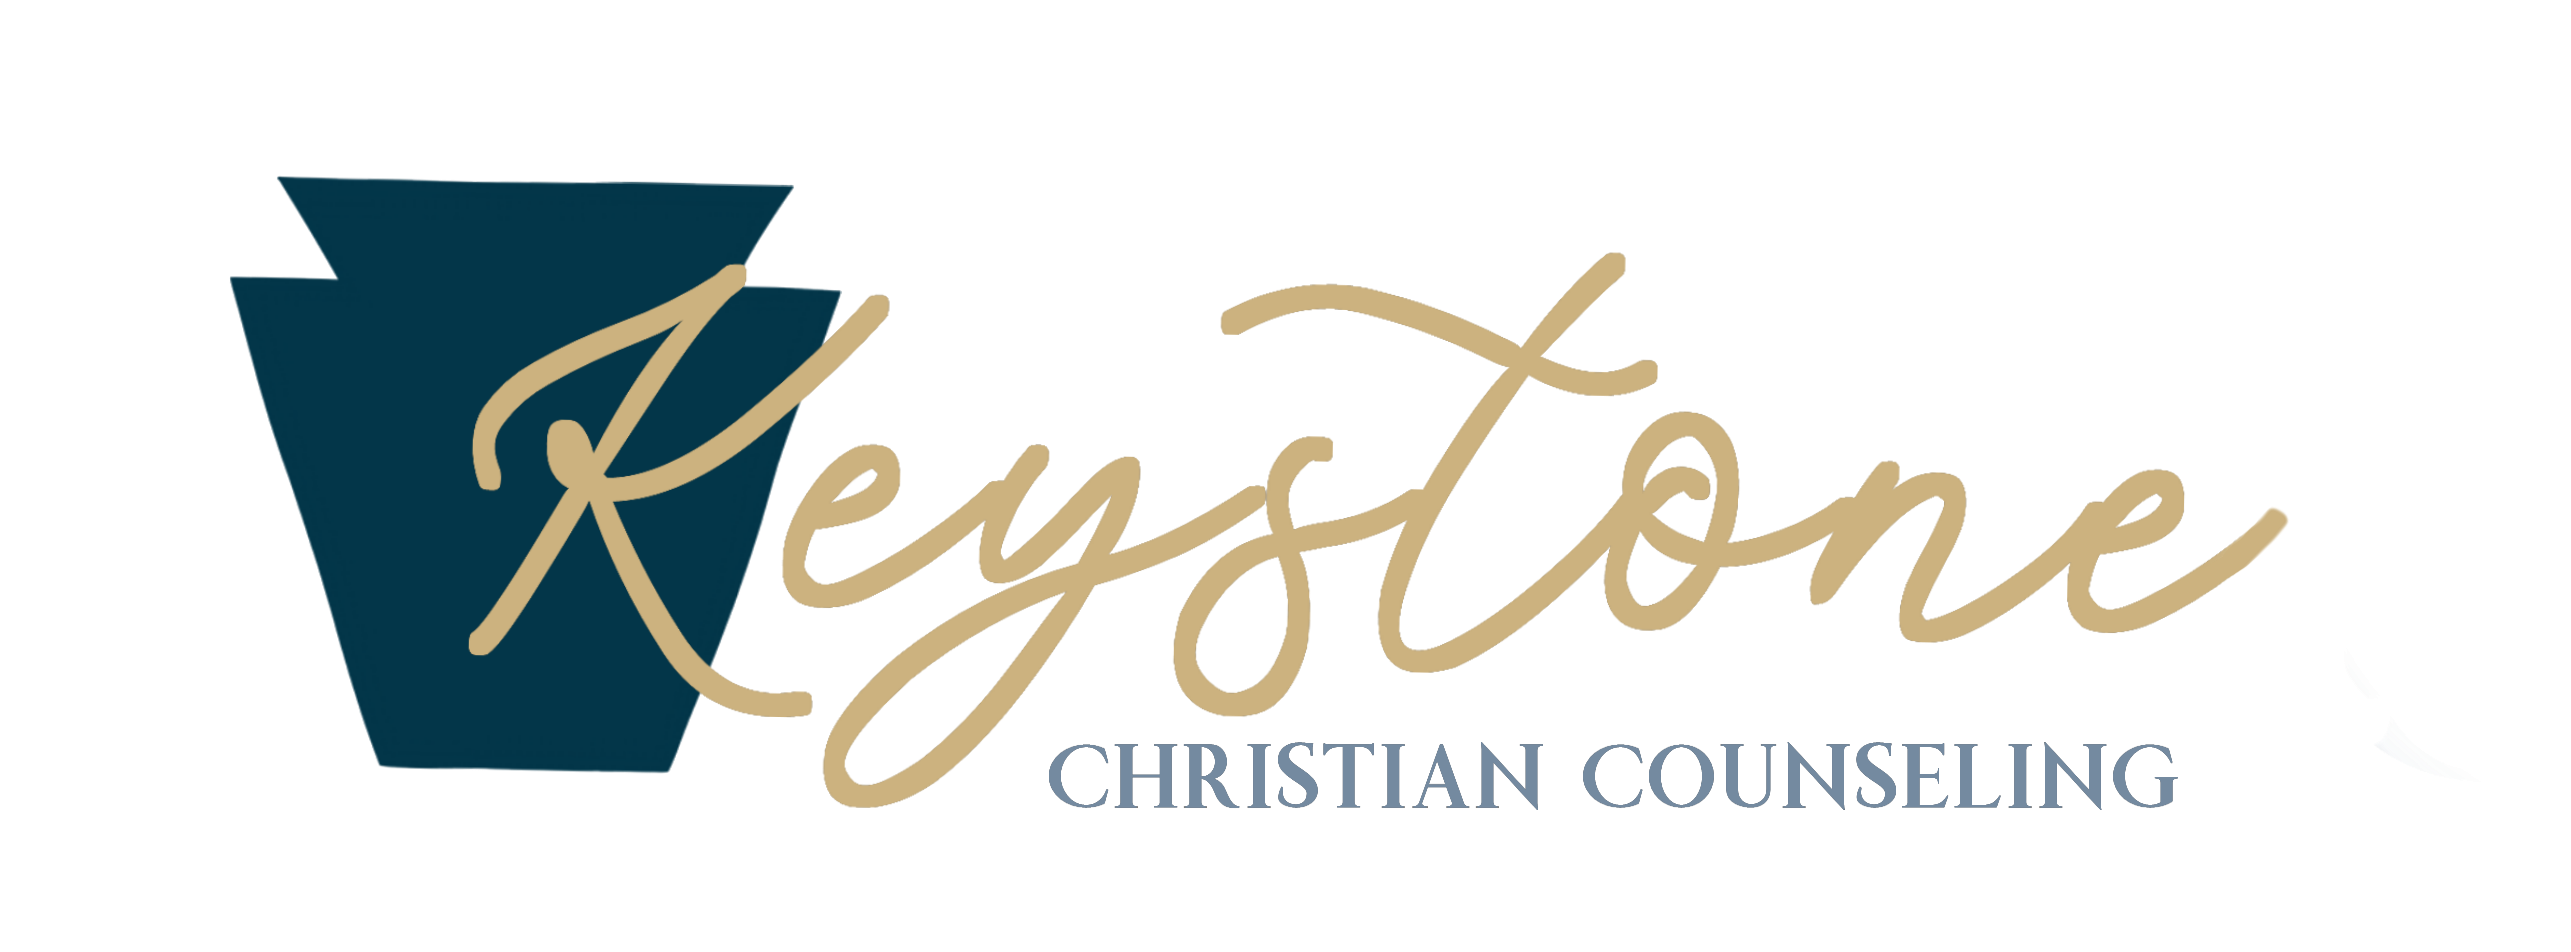 Keystone Christian Counseling and Life Coaching